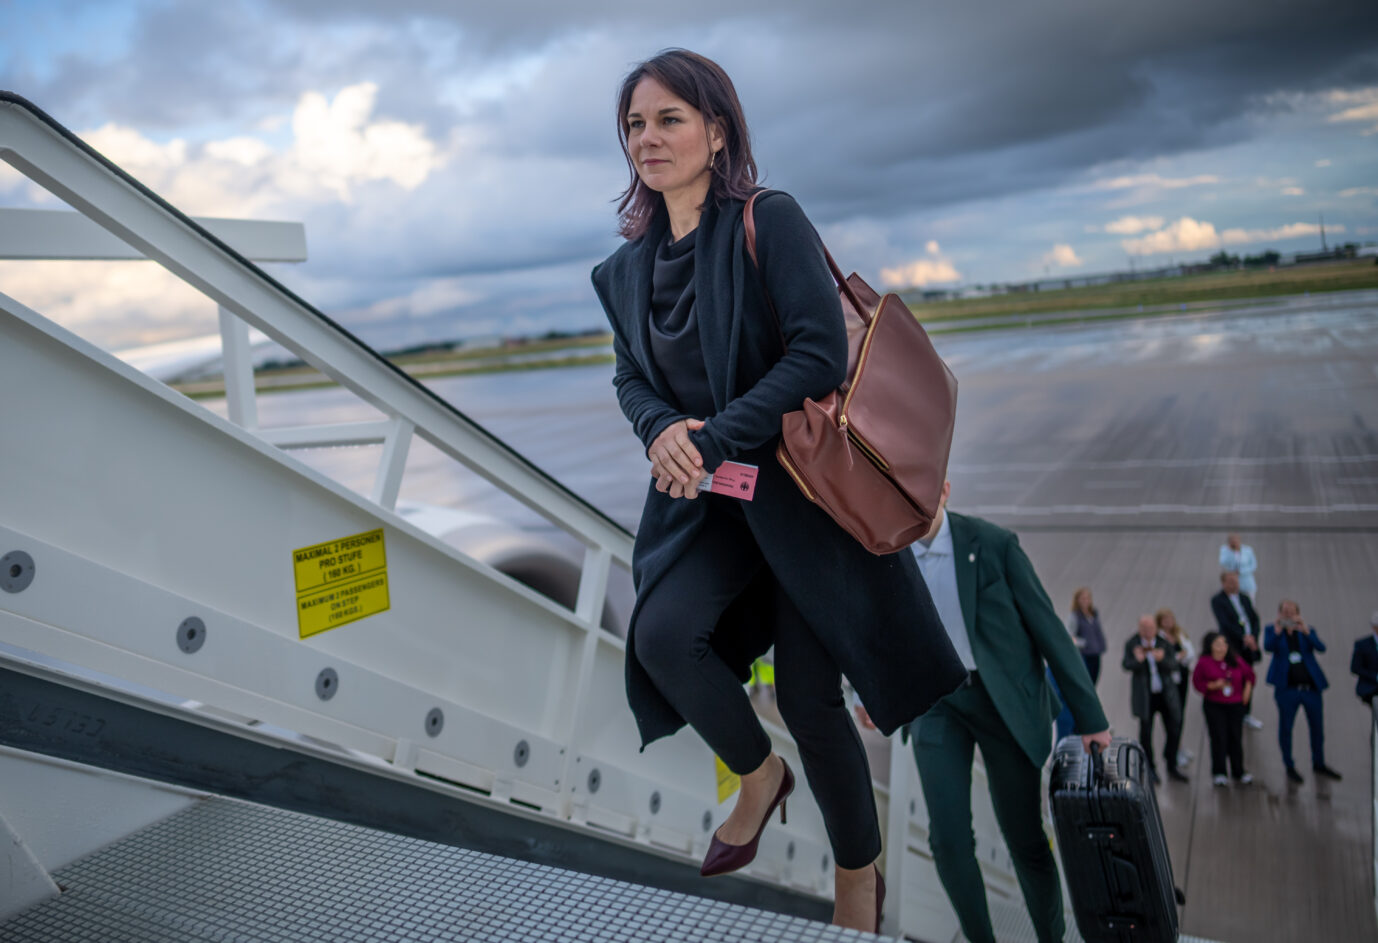 Außenministerin Annalena Baerbock (Grüne) betritt die Zugangsrampe eines Flugzeugs und grinst